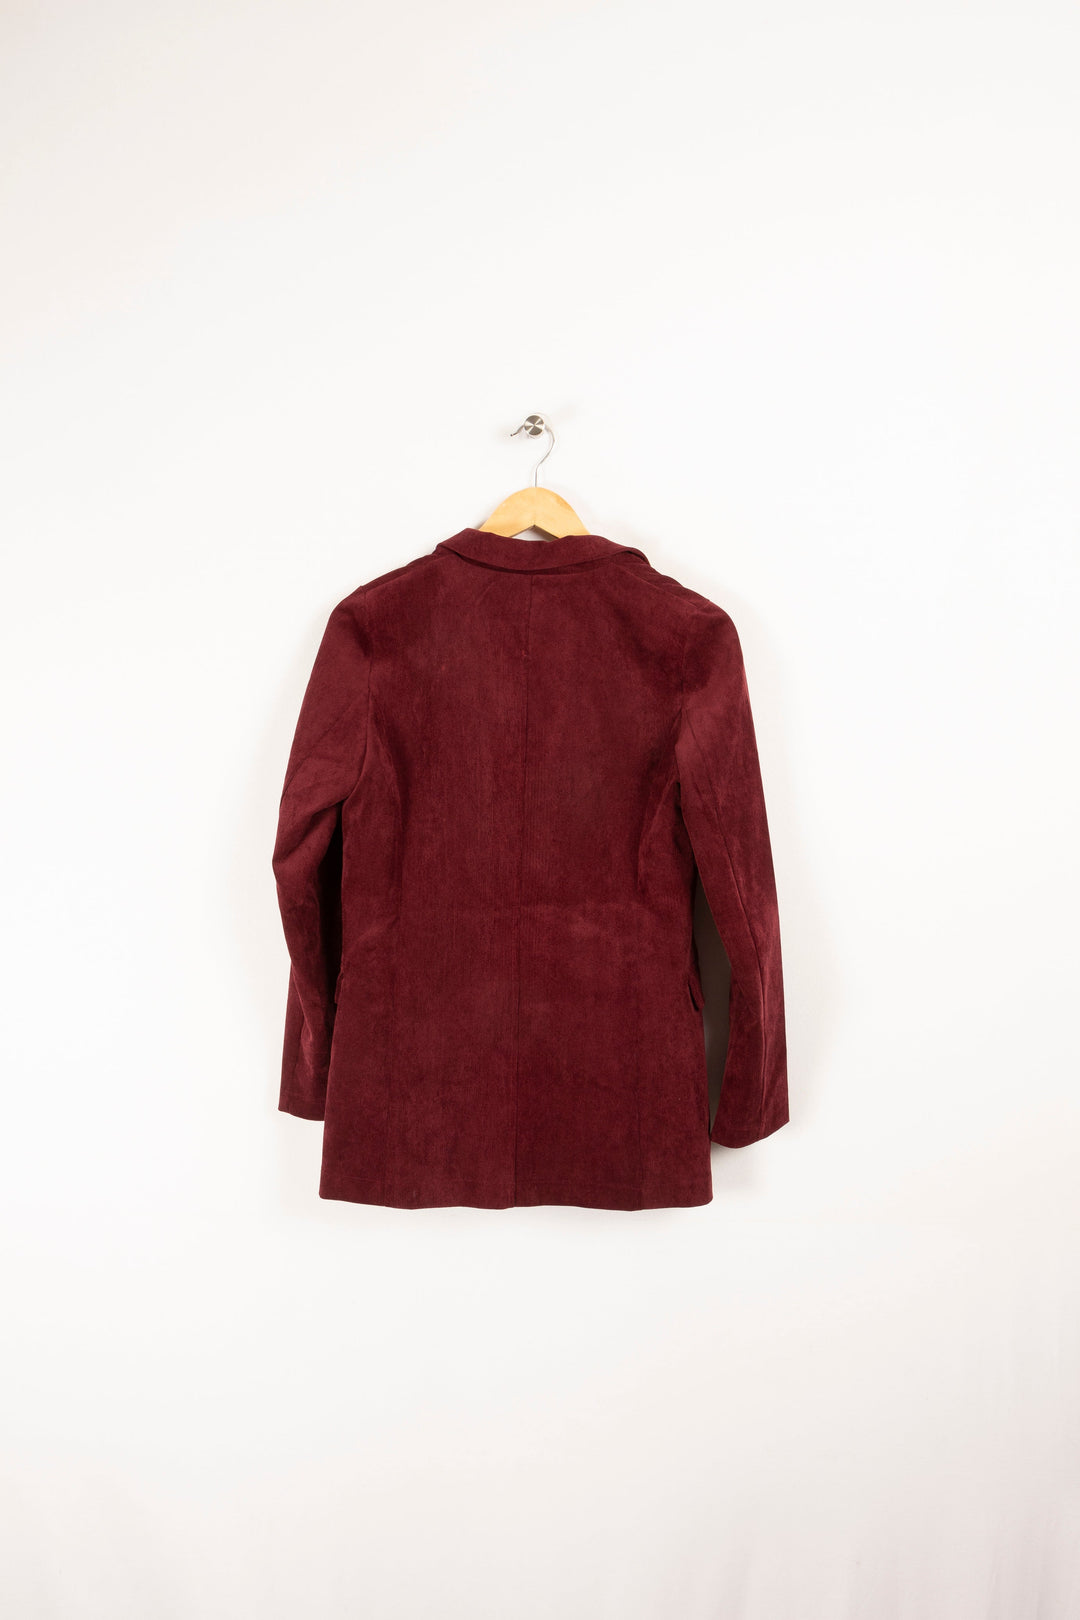 Burgundy jacket - Size M/38